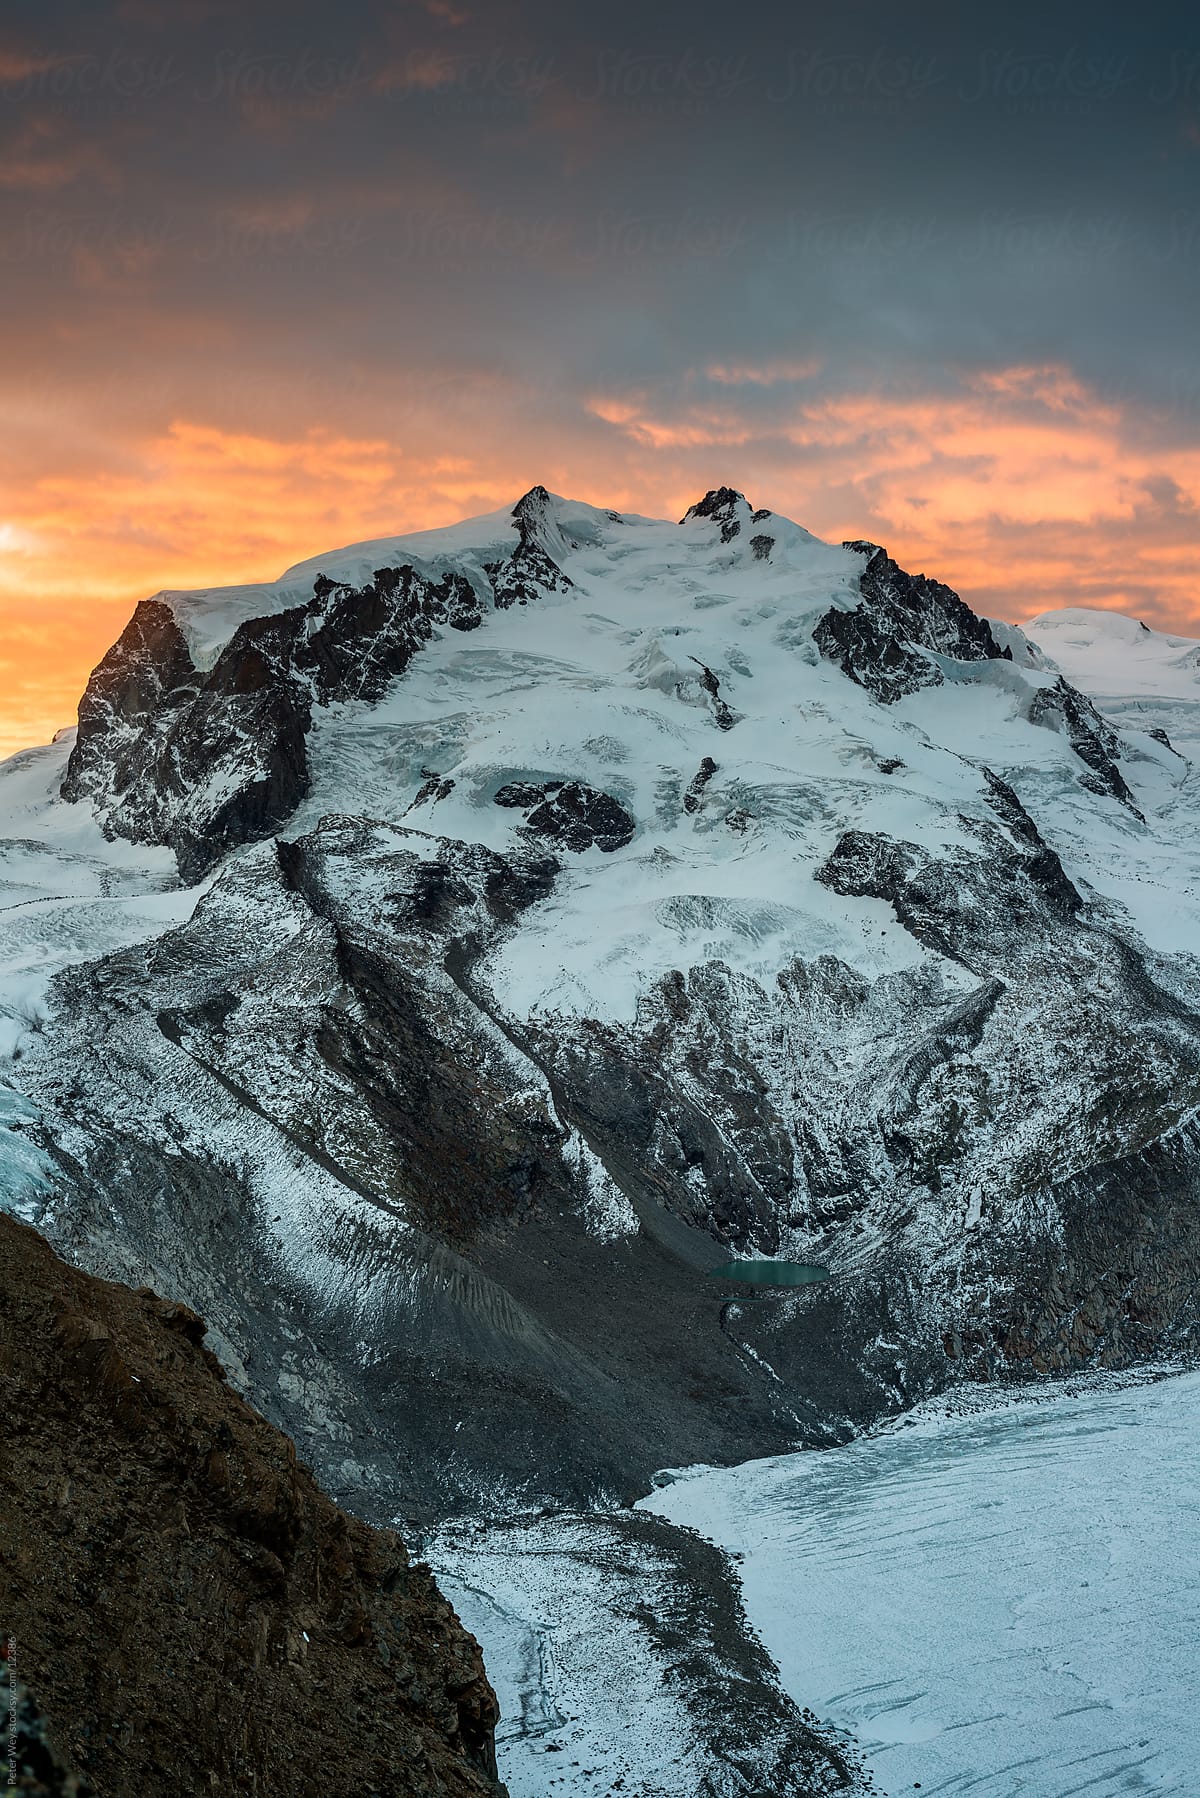 Mountains of Switzerland, Zermatt, Gornergrat: Monte Rosa at sunrise